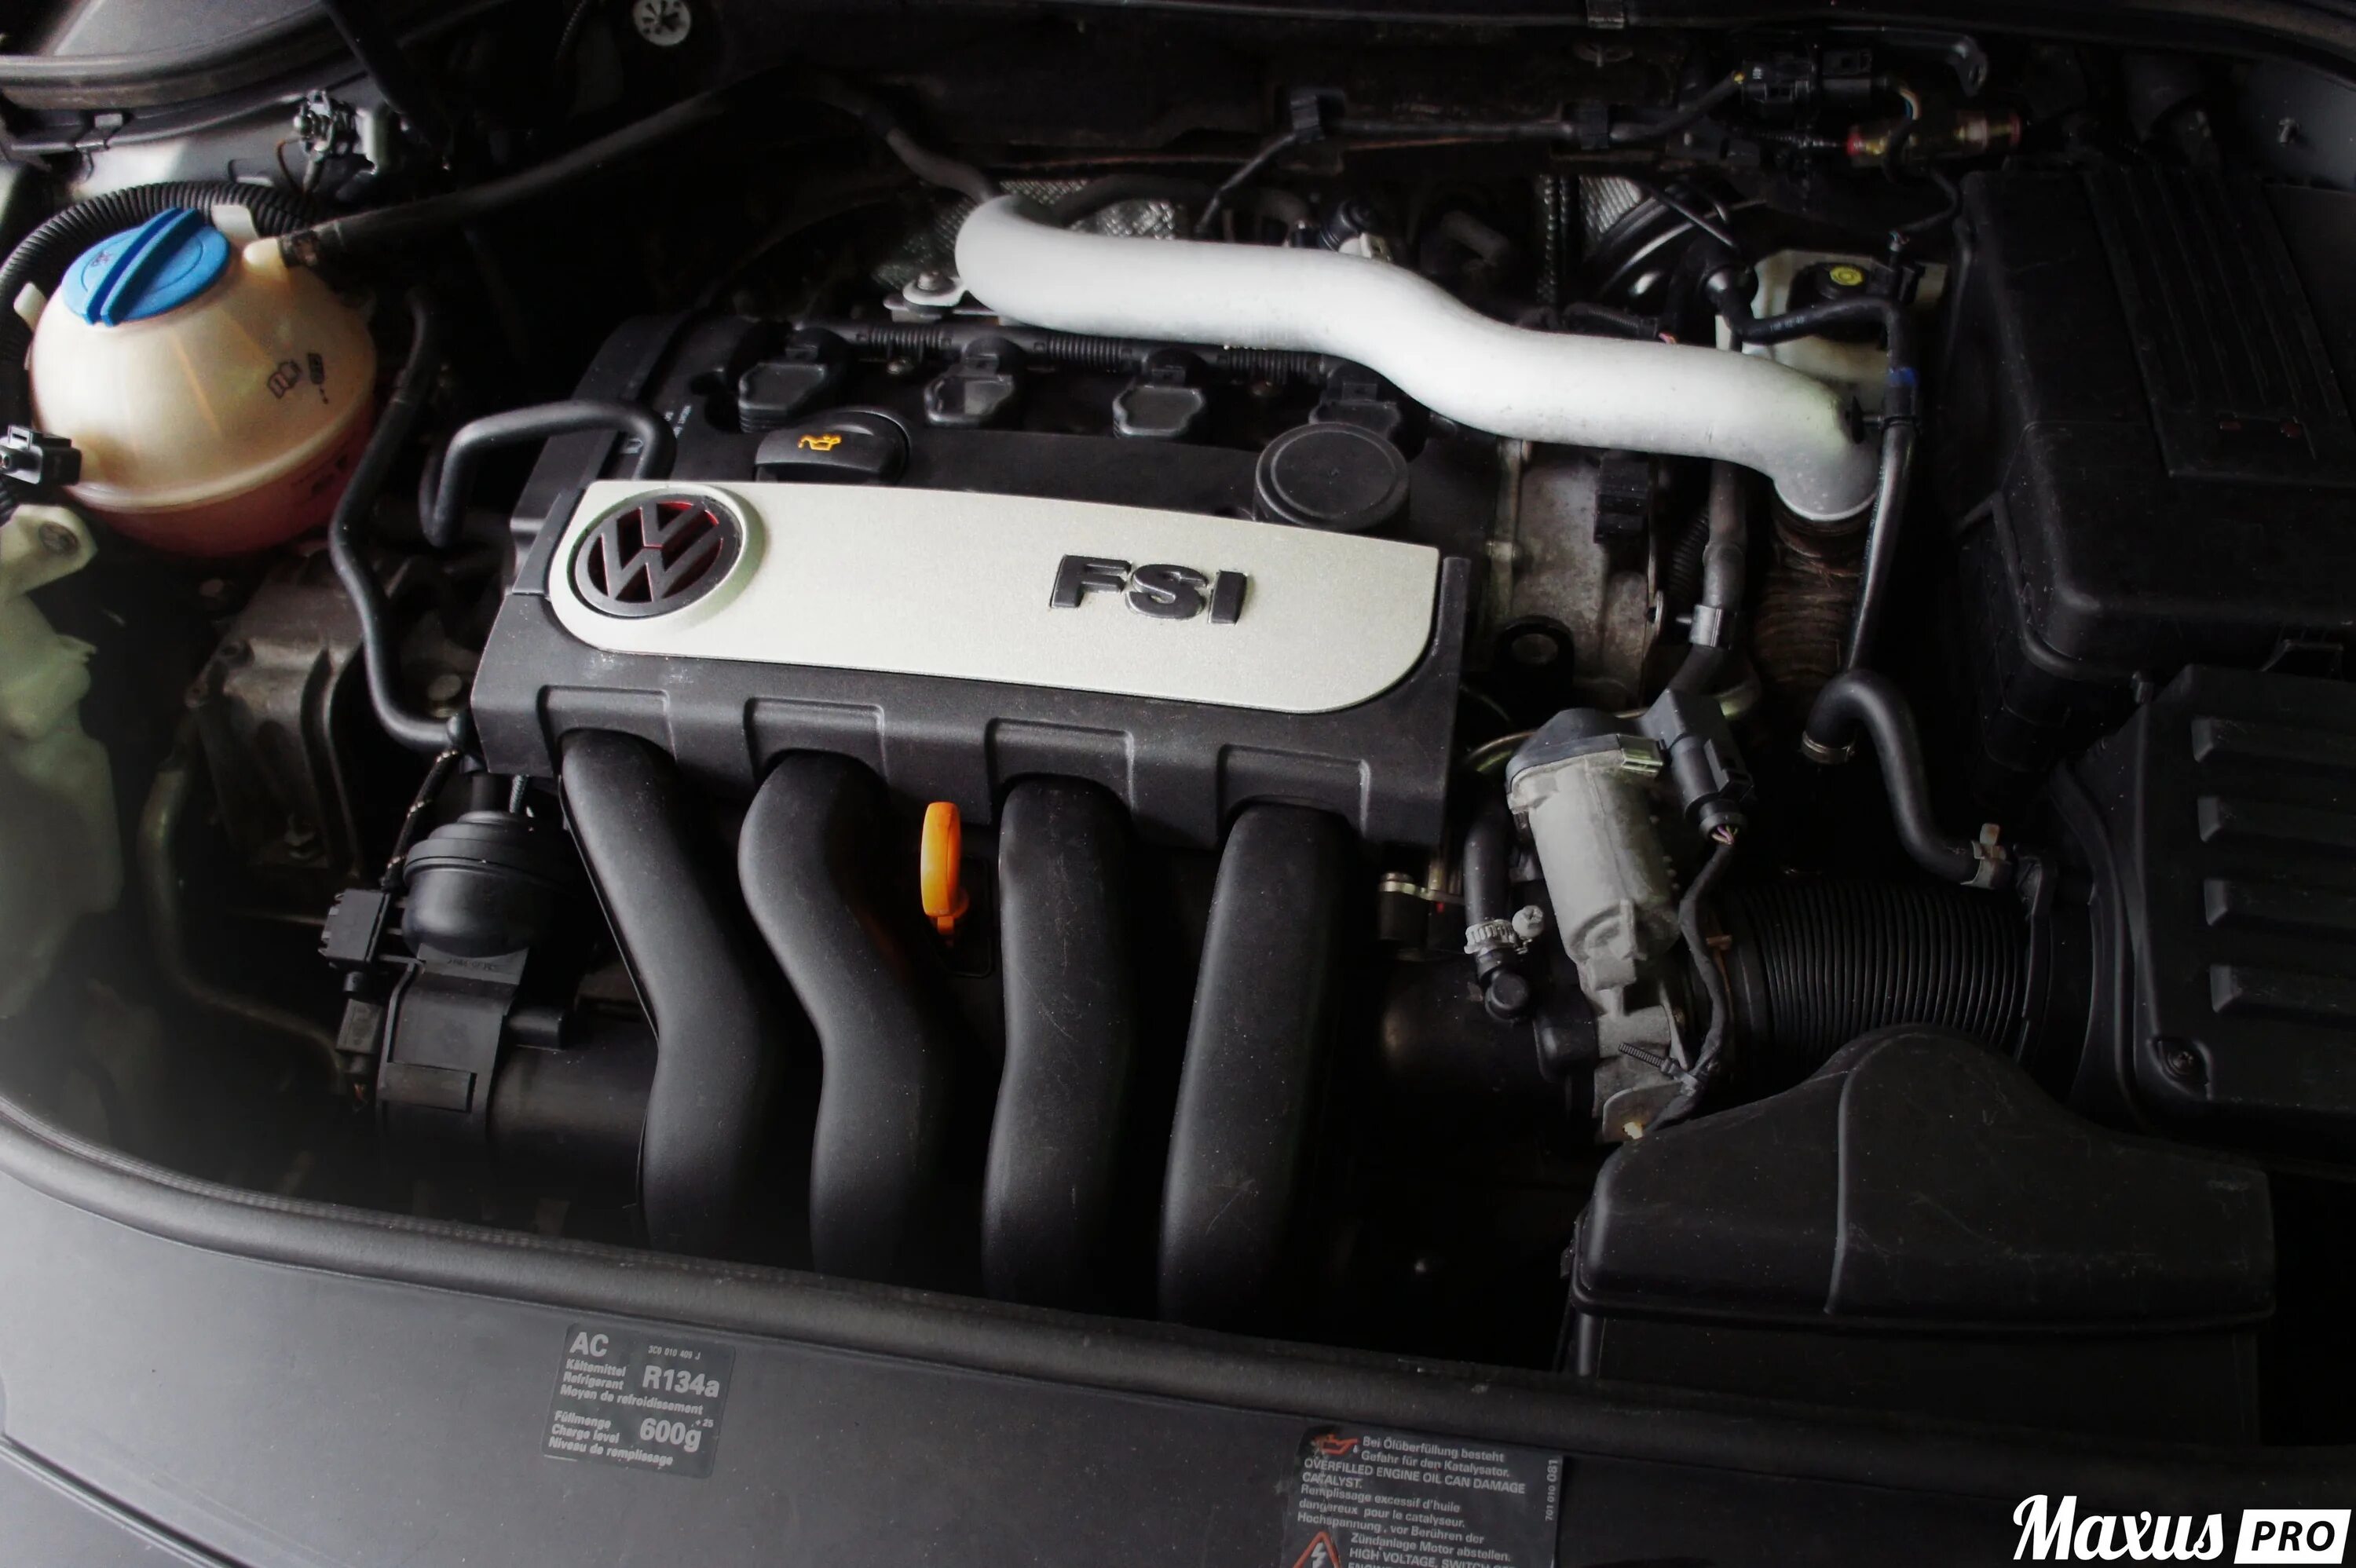 Датчики пассат б6 2.0 fsi. Двигатель Фольксваген Пассат б6 2.0 FSI. Двигатель VW Passat b6 2.0FSI. Пассат б6 2.0 FSI 150 Л.С. Мотор FSI Passat b6.